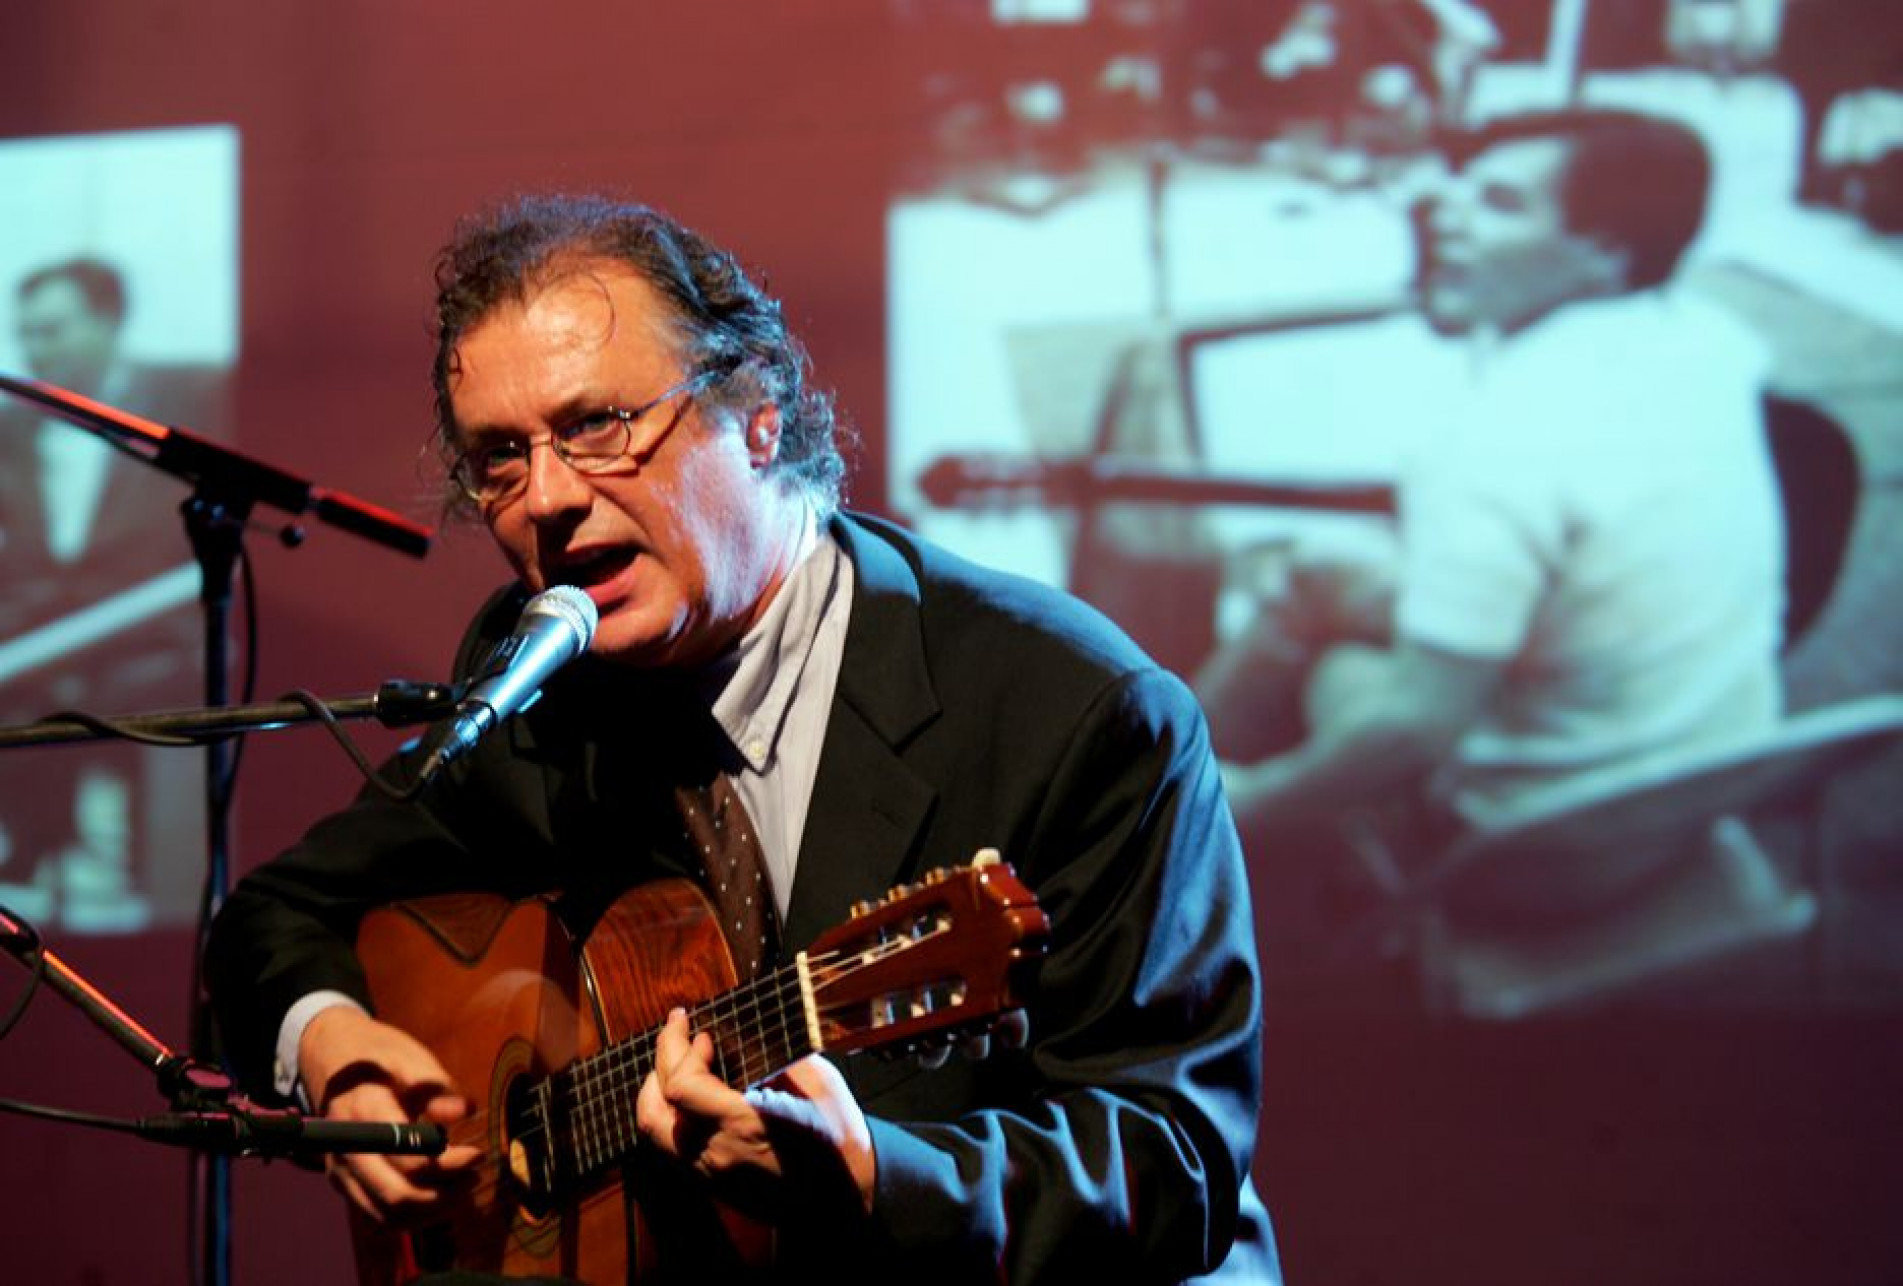 Morre o músico Paulo Jobim, filho de Tom Jobim, aos 72 anos